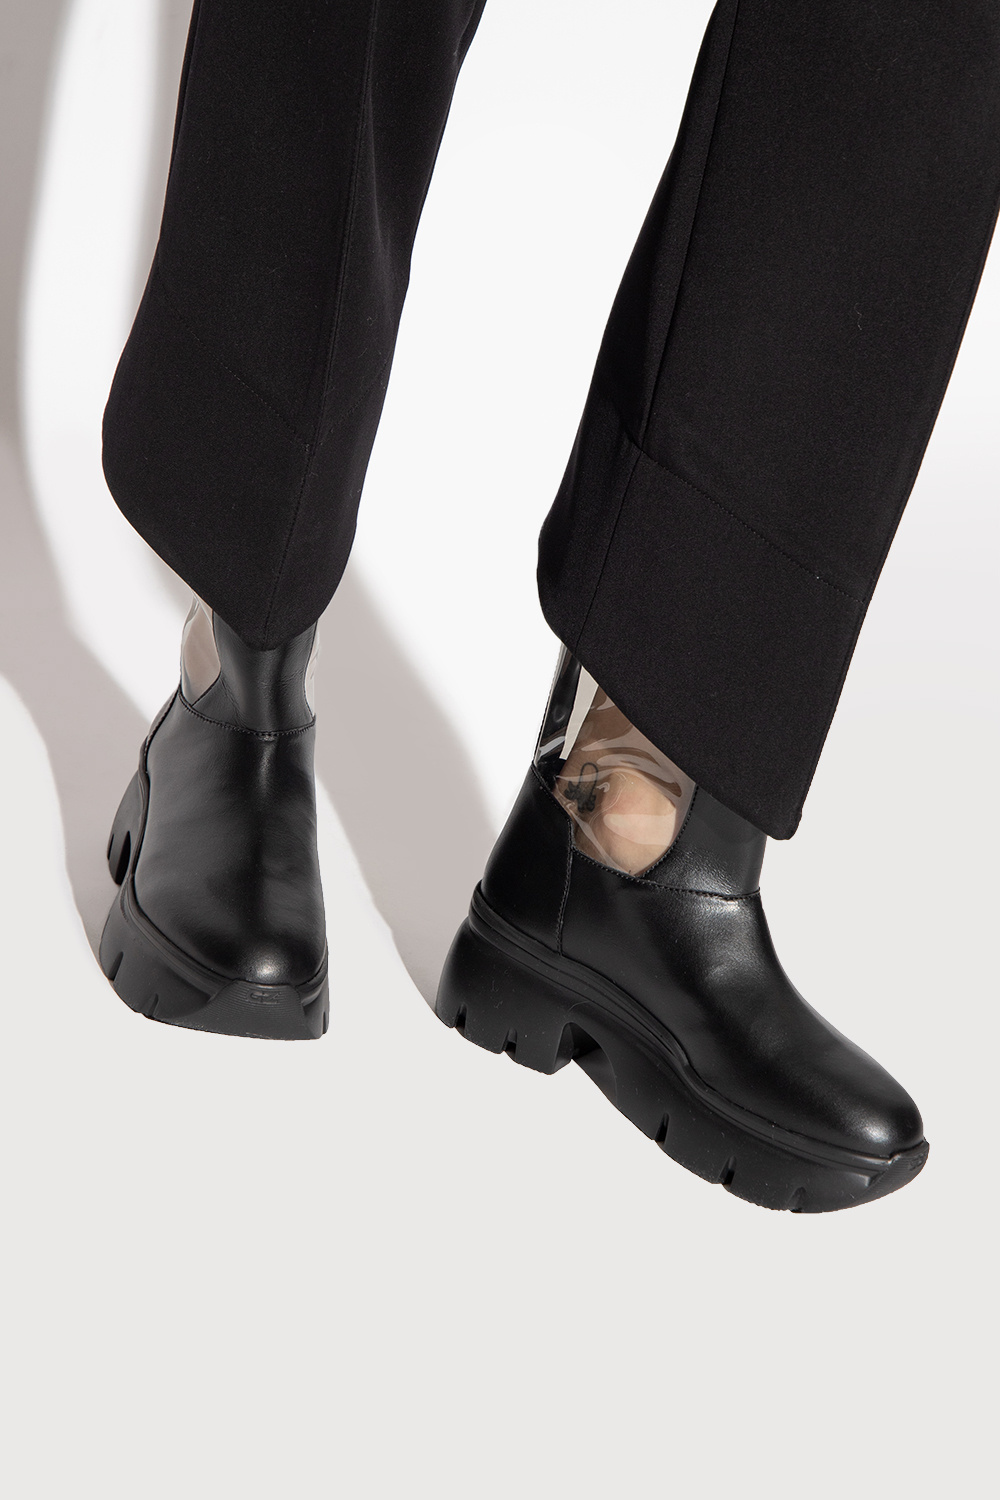 | zapatillas de running amortiguación media talla 39 amarillas baratas menos de 60 Women's Shoes | Giuseppe Zanotti 'Apocalypse Riot' transparent boots